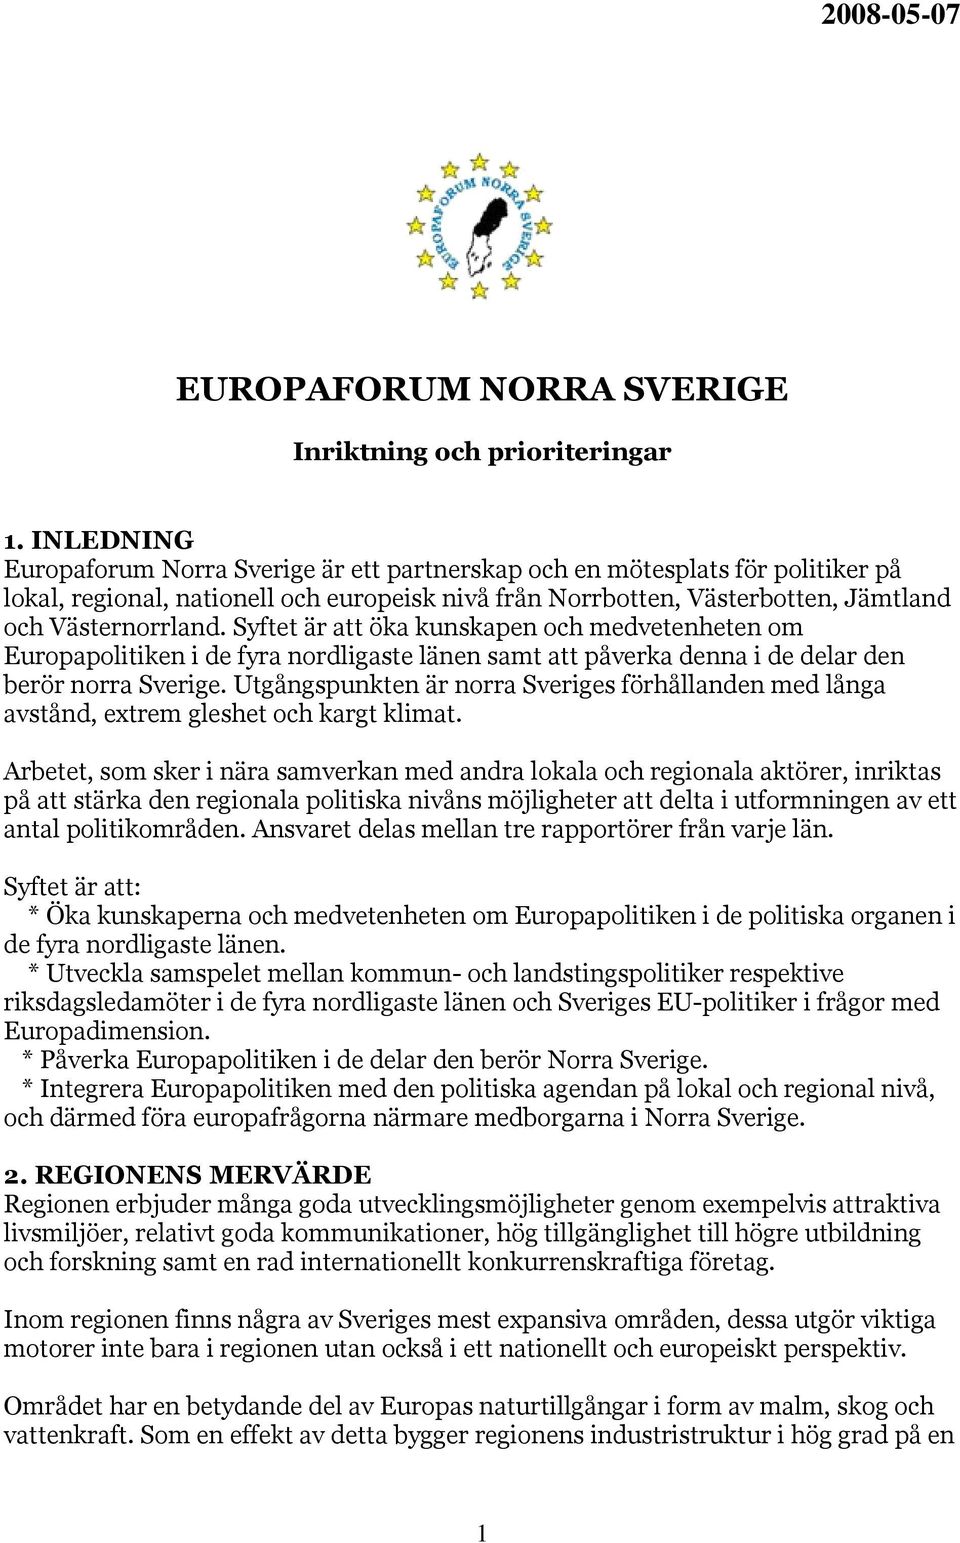 Syftet är att öka kunskapen och medvetenheten om Europapolitiken i de fyra nordligaste länen samt att påverka denna i de delar den berör norra Sverige.